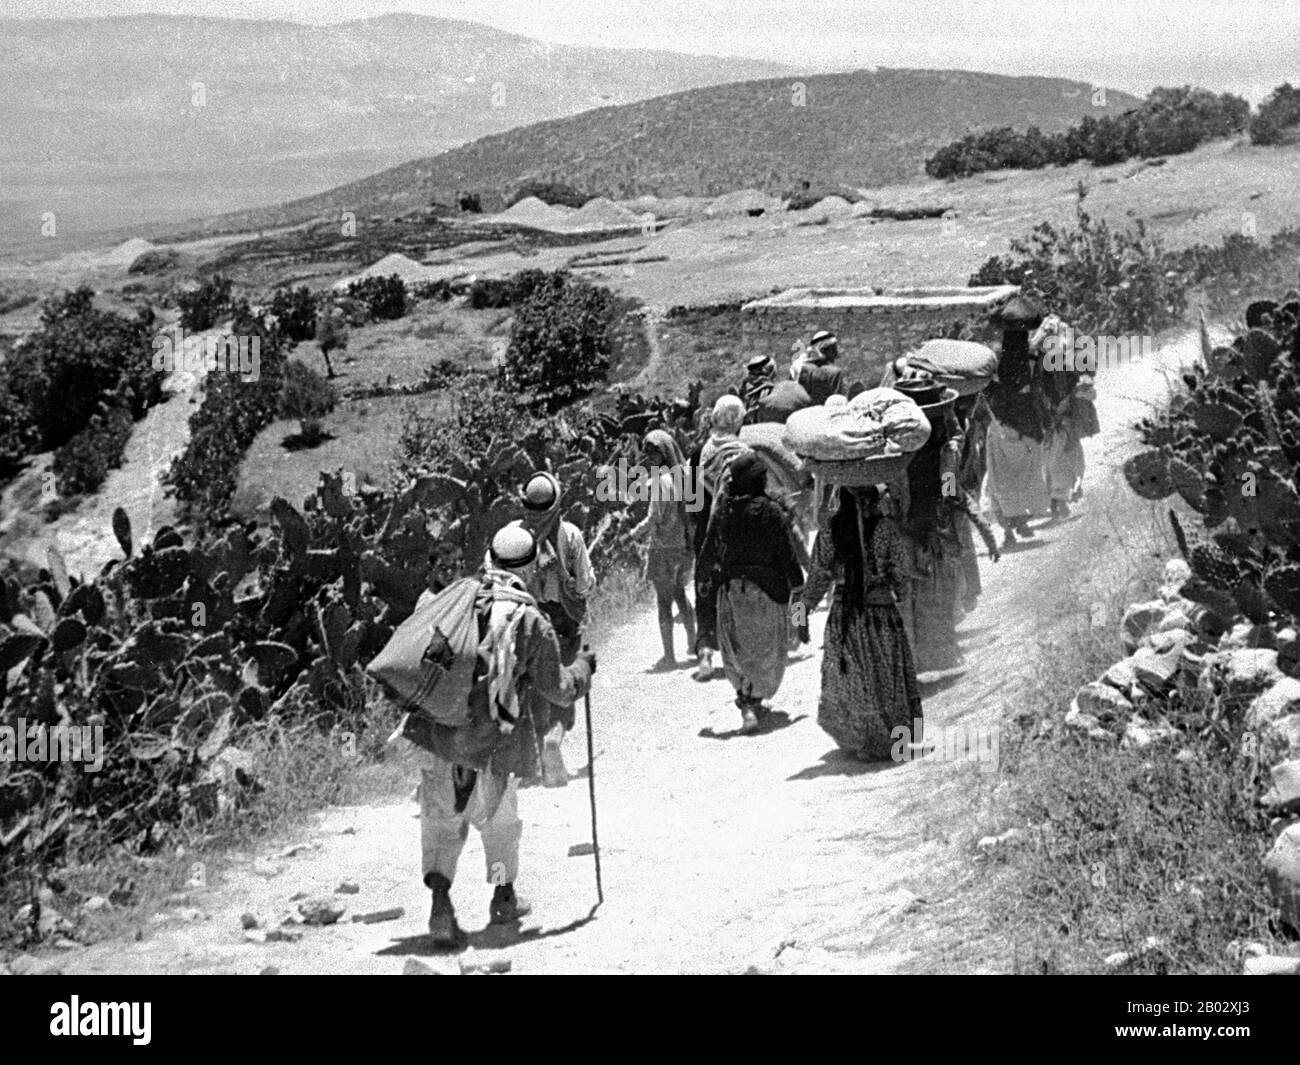 Die palästinensische Exodus von 1948, die auf Arabisch als Nakba (arabisch: An-Nakbah, Lit.'Katastrophe') bekannt ist, ereignete sich, als mehr als 700.000 palästinensische Araber flohen oder aus ihren Häusern vertrieben wurden, während des Bürgerkrieges von 1947 bis 1948 in Mandatory Palestine und dem arabisch-israelischen Krieg von 1948. Die genaue Zahl der Flüchtlinge ist umstritten, aber rund 80 Prozent der arabischen Einwohner von dem, was Israel wurde (50 Prozent der arabischen Gesamtbevölkerung von obligatorischem Palästina) verließen oder wurden aus ihren Häusern vertrieben. Später im Krieg wurden Palästinenser im Rahmen des "Plans Dalet" in einer Politik der "ethnischen Säuberung" zwangsweise vertrieben Stockfoto